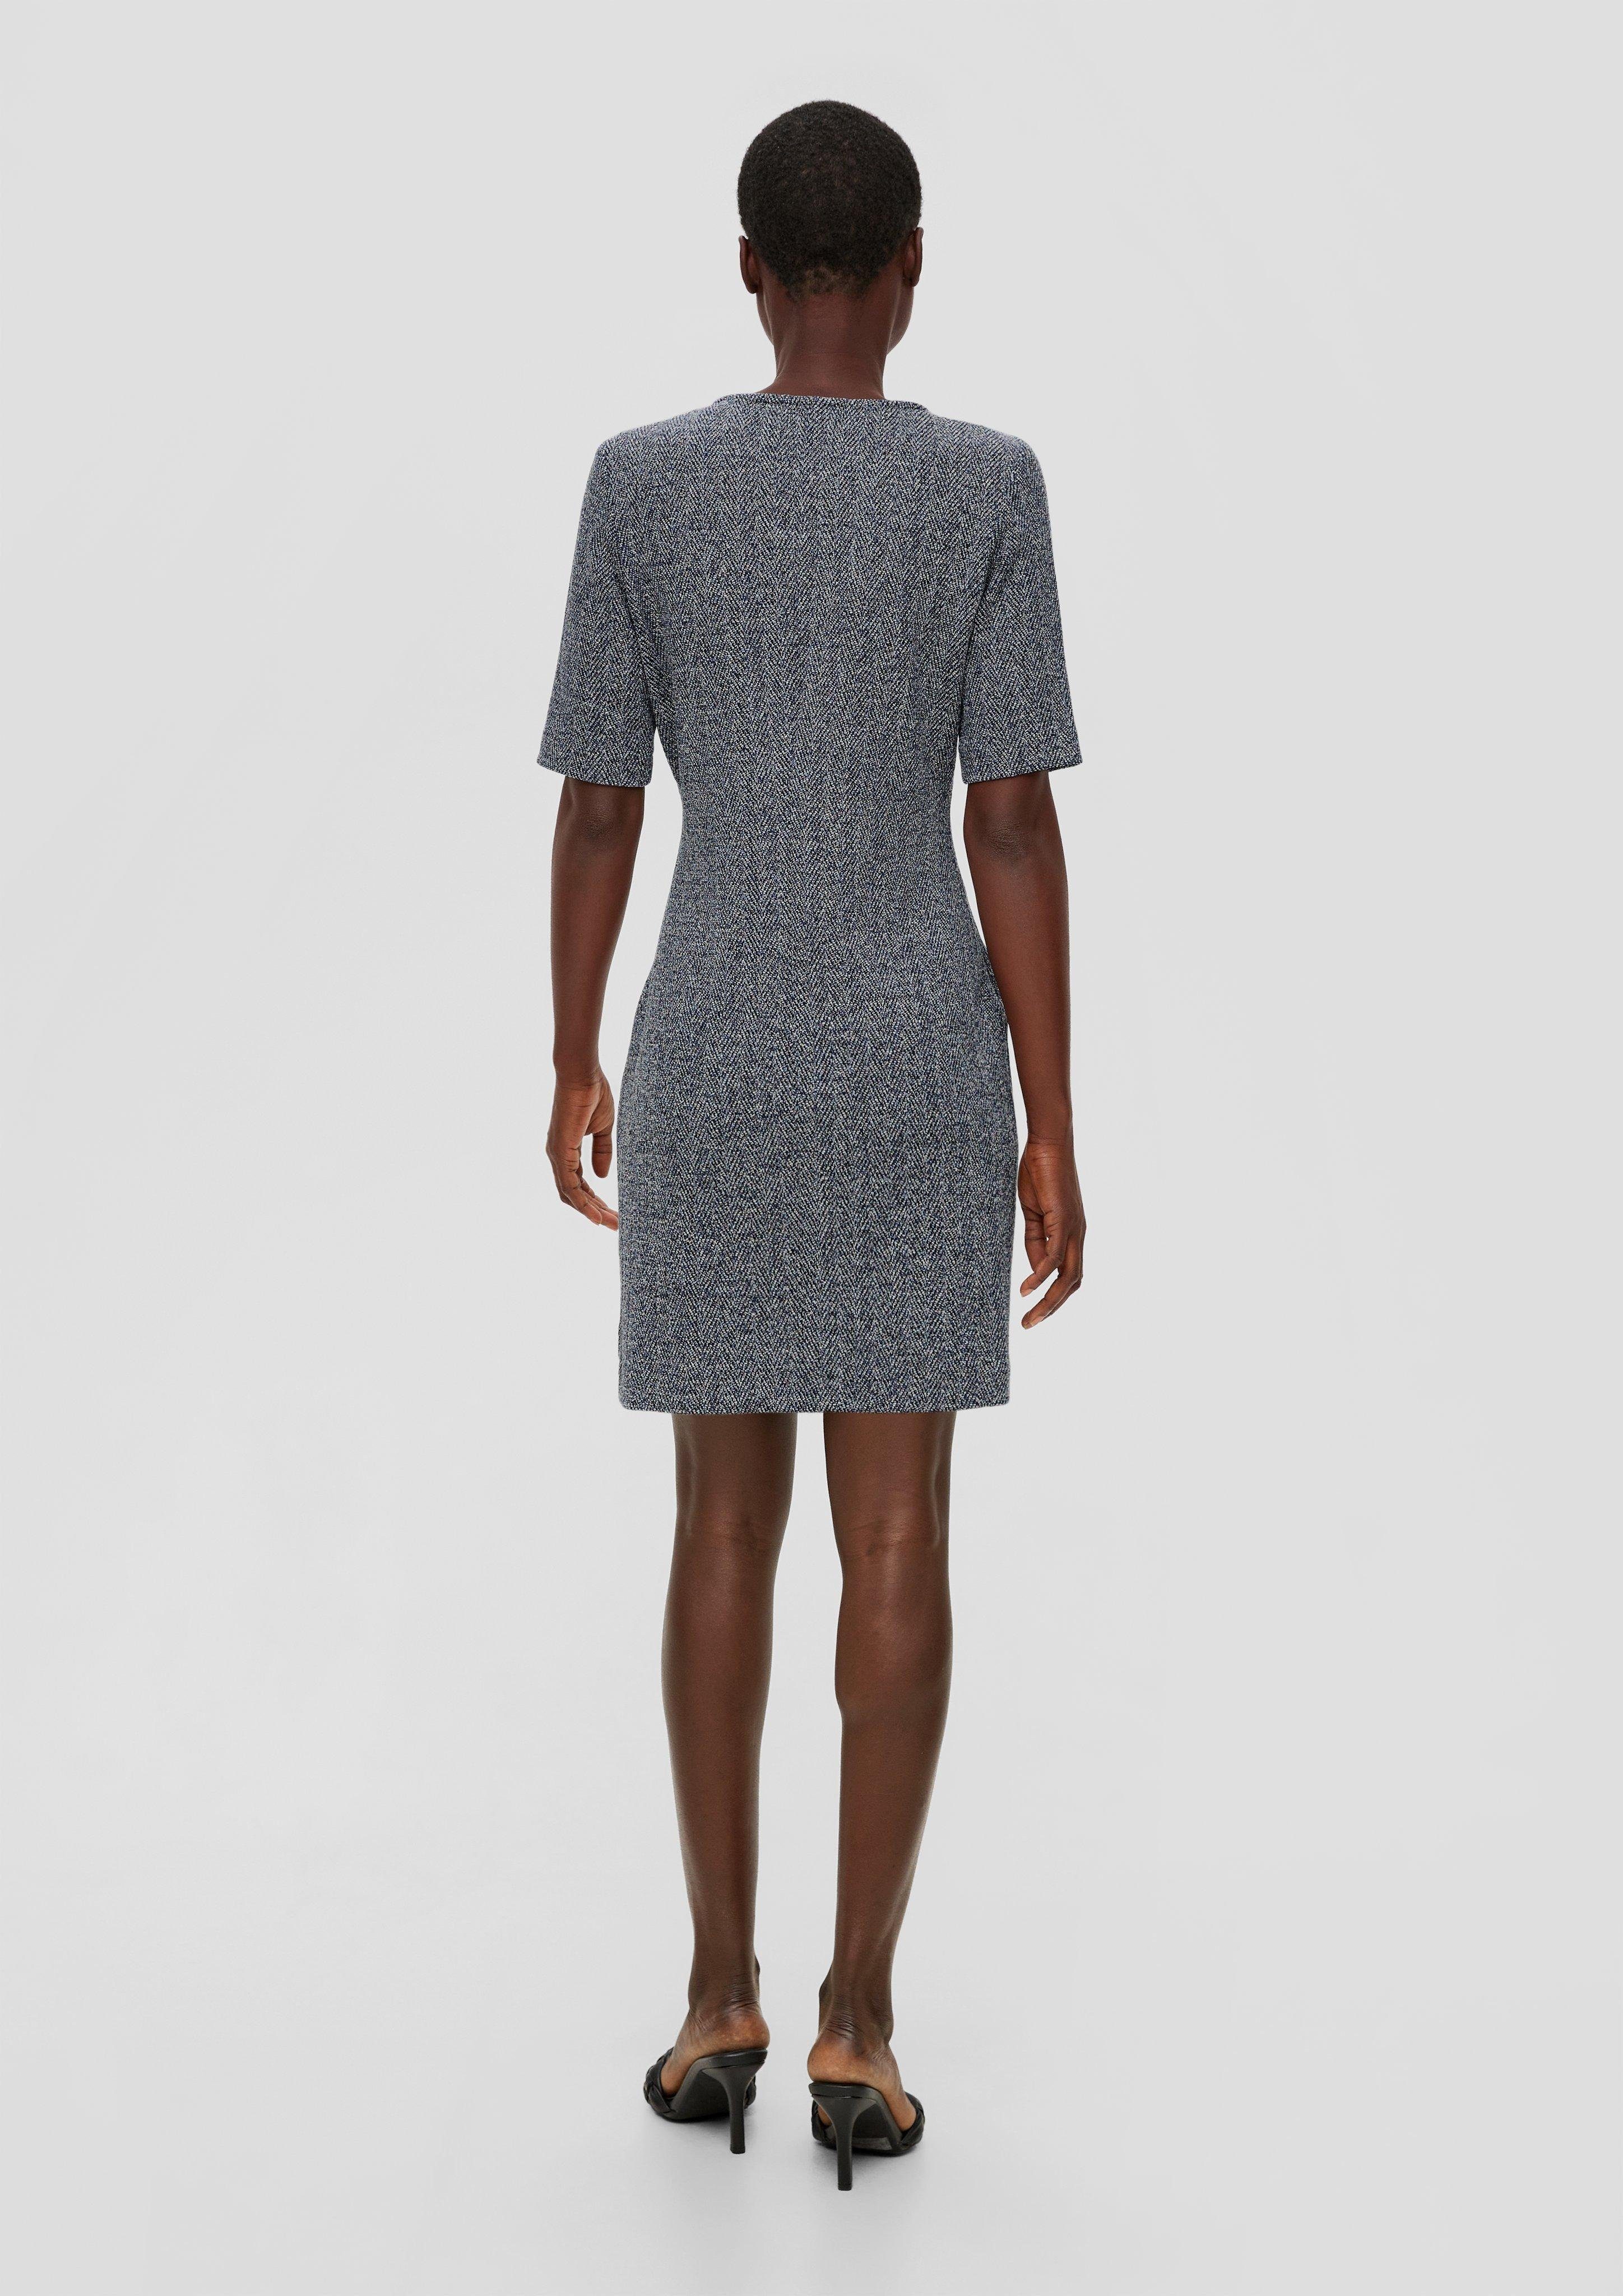 Interlockjersey-Kleid mit Minikleid V-Ausschnitt LABEL s.Oliver BLACK